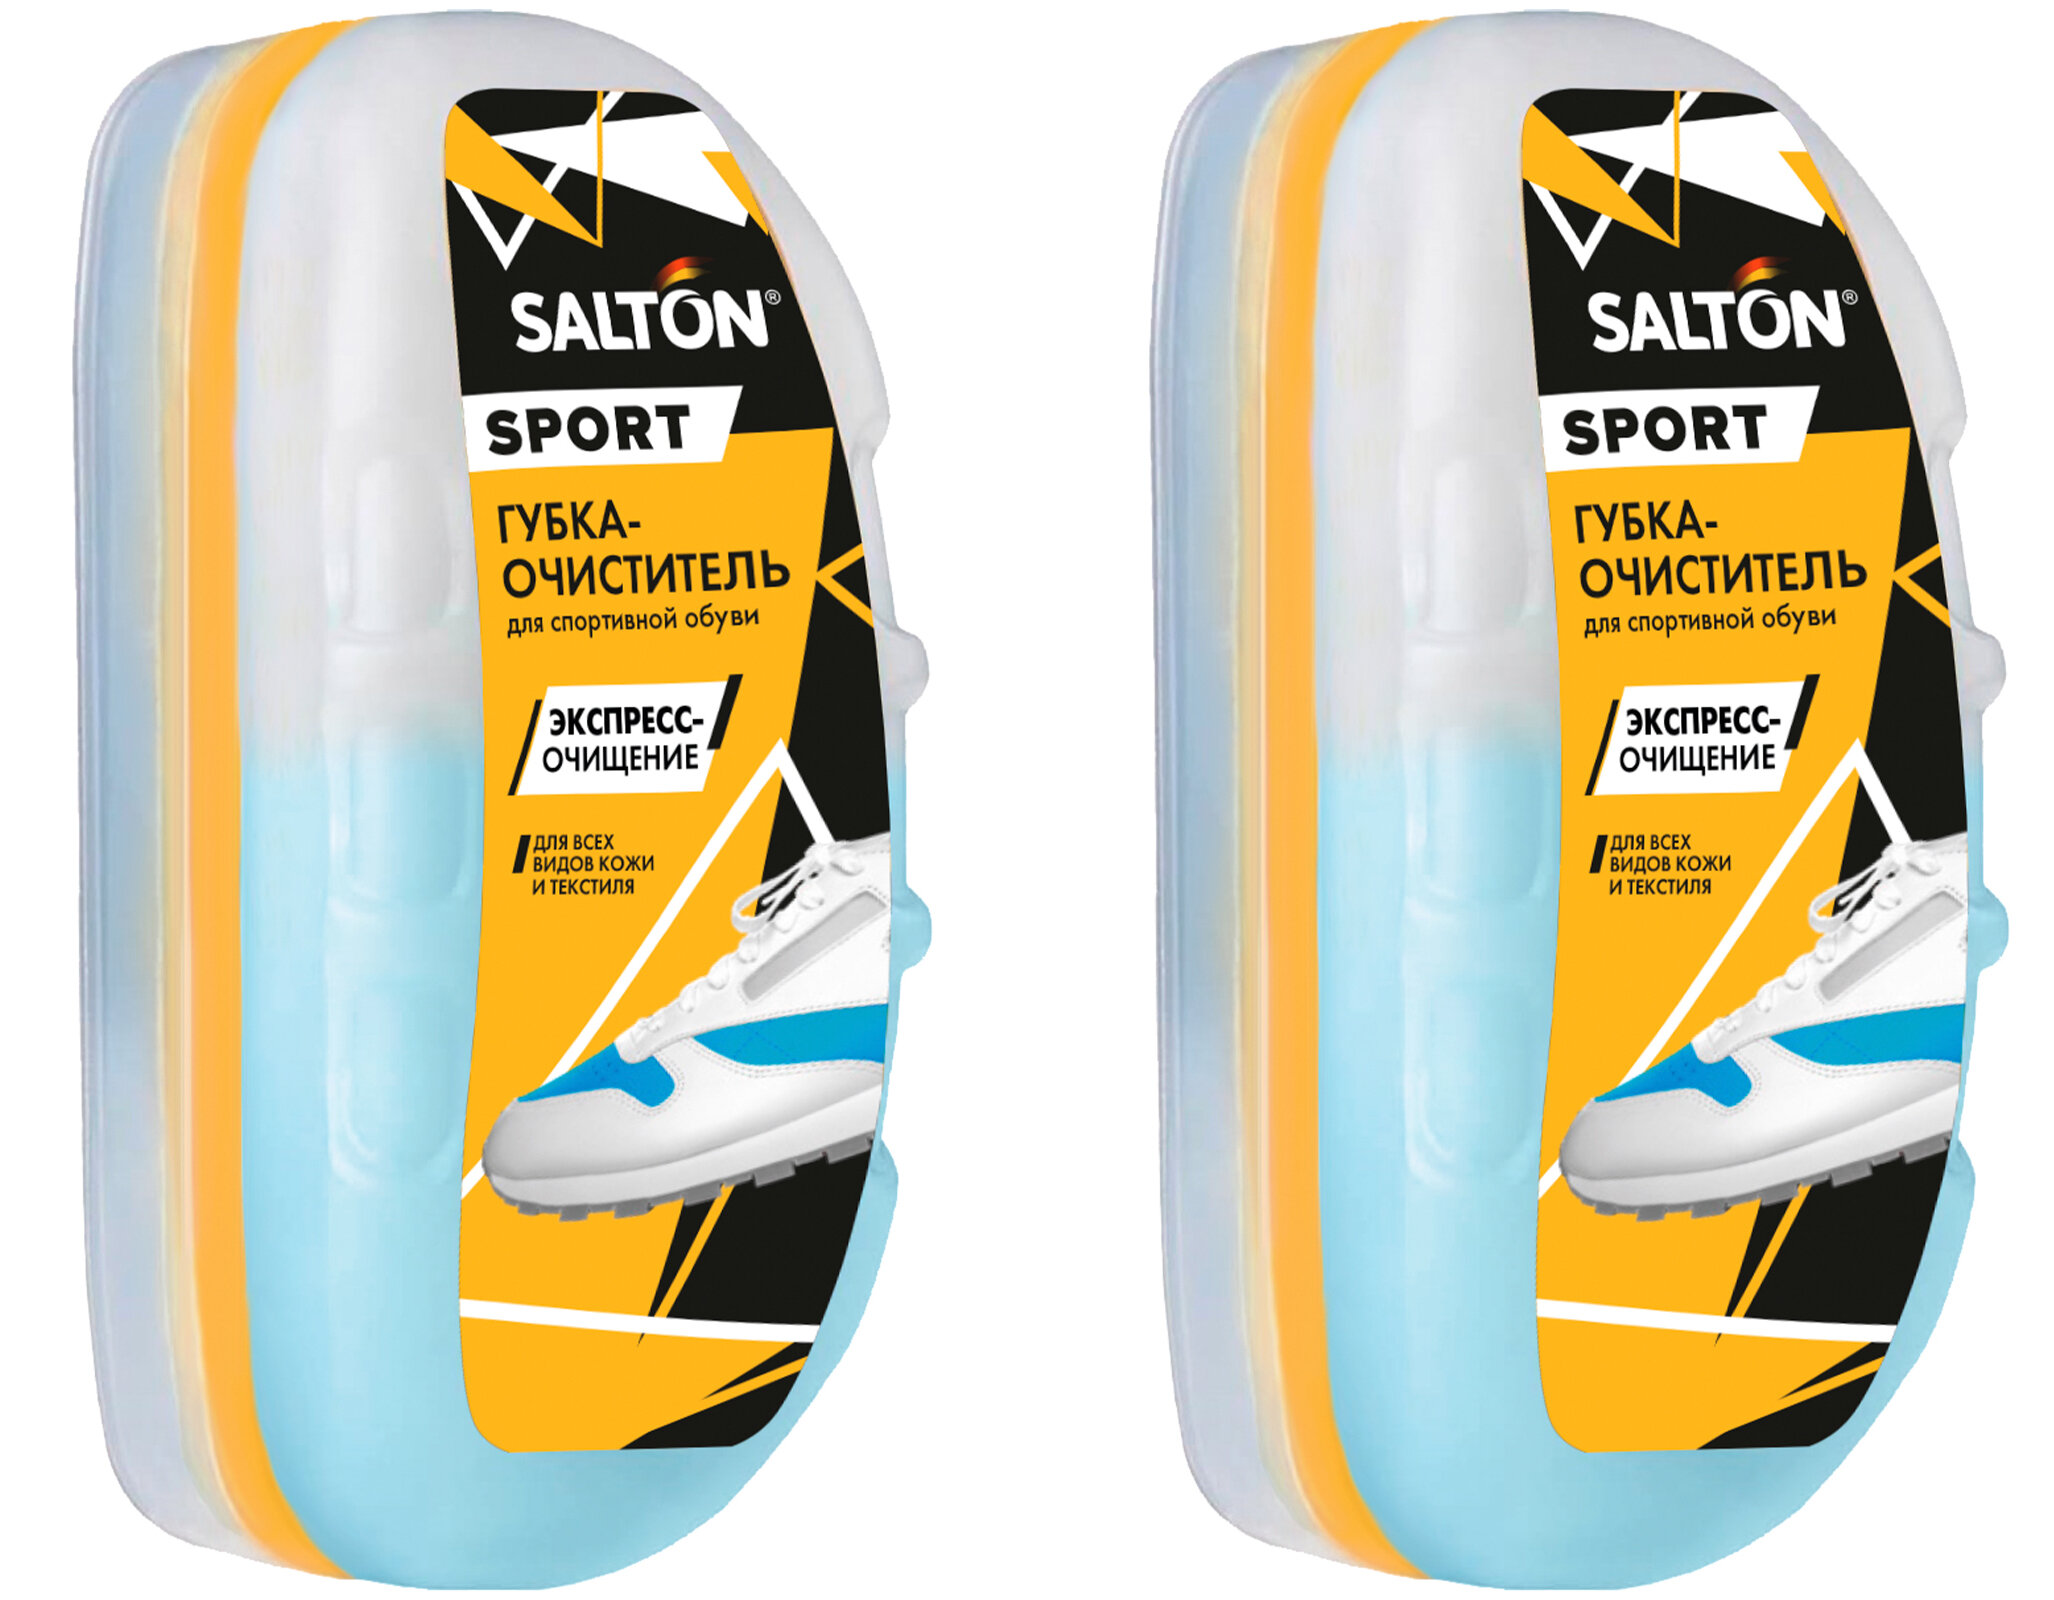 SALTON Sport Губка-очиститель для спортивной обуви из всех видов кожи и текстиля бесцветный, 75 мл (2шт в наборе)